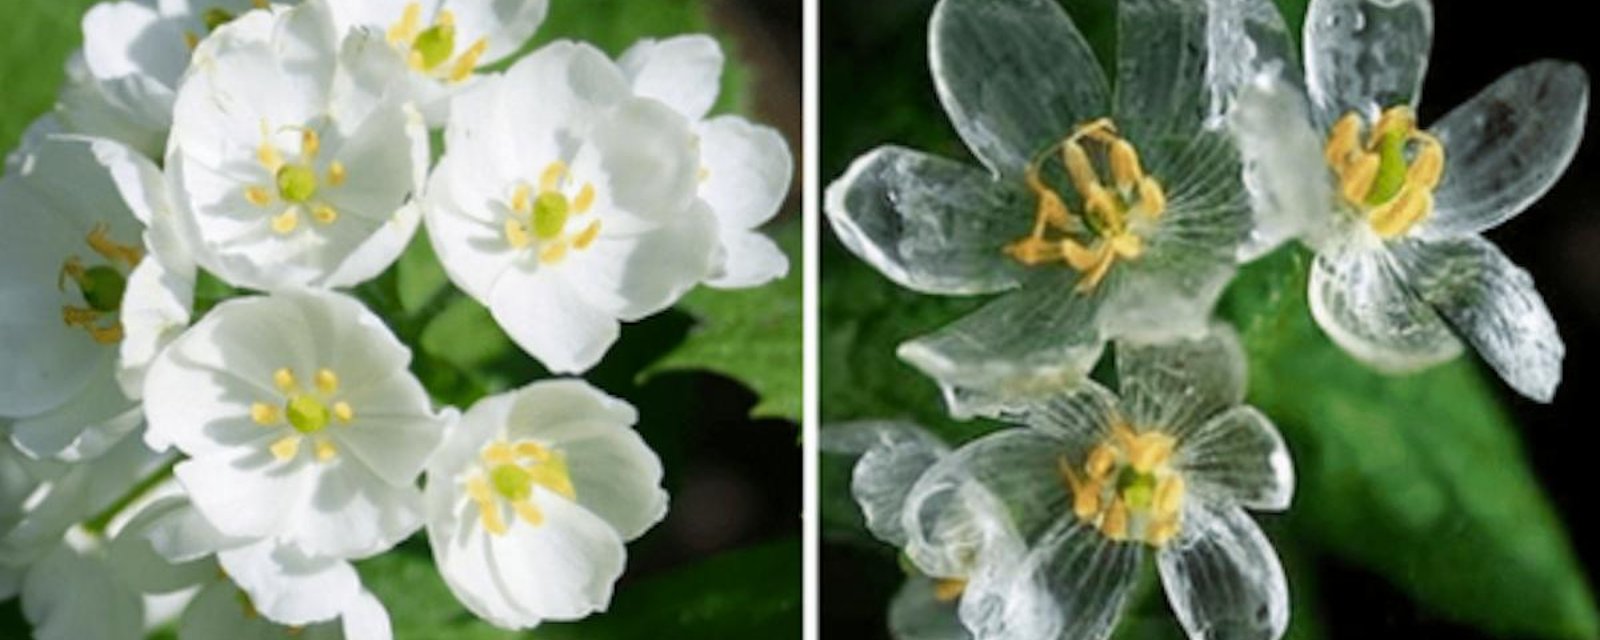 La fleur de verre (ou plante squelette): un végétal rare et fascinant!